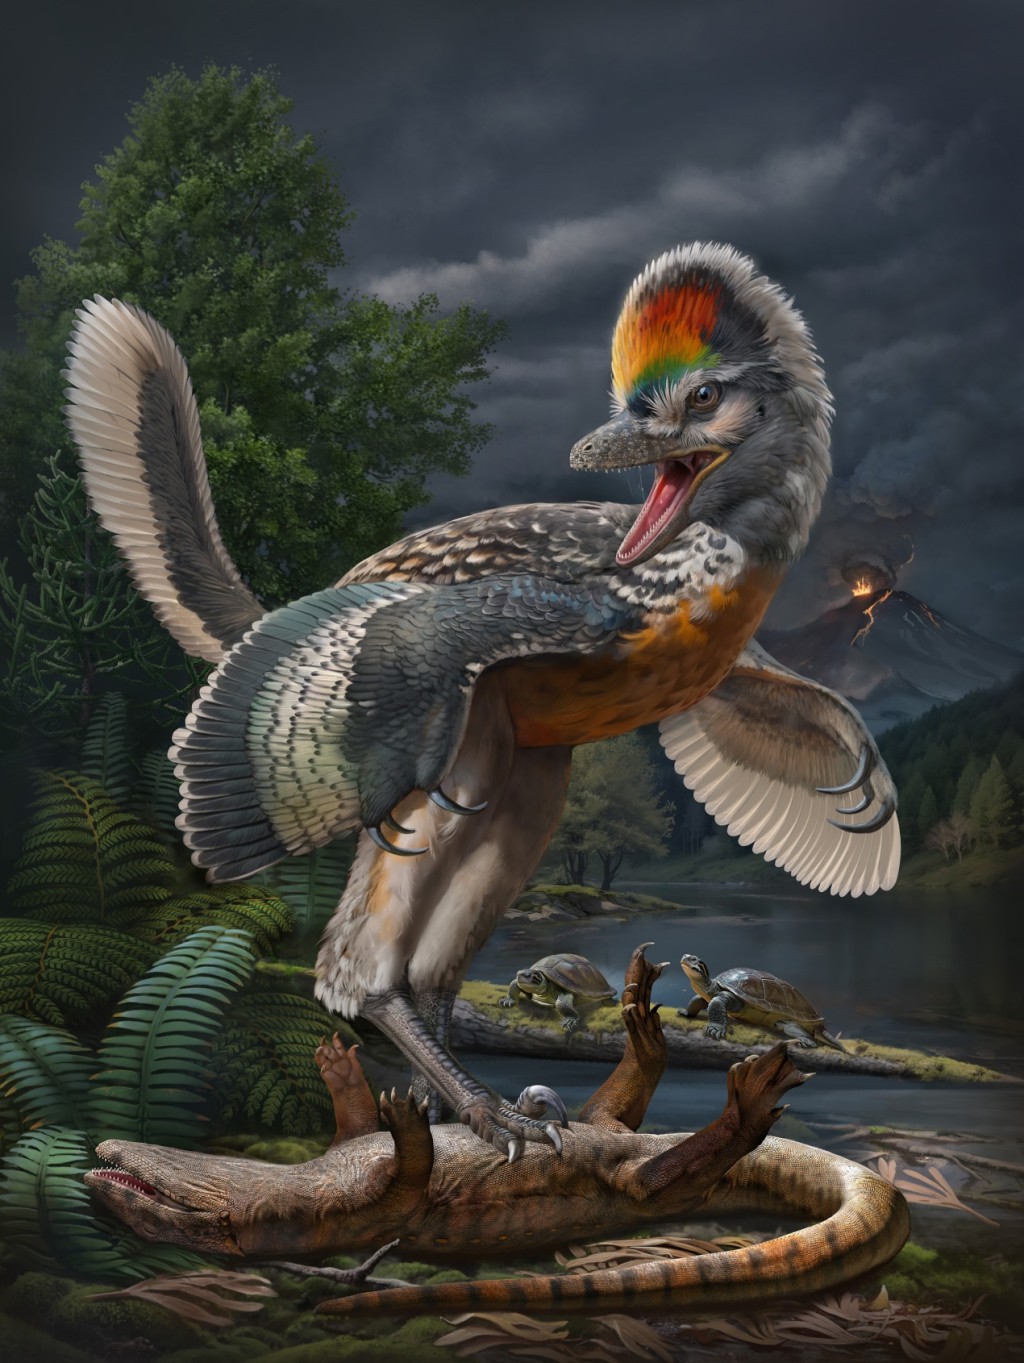 約1.5億年前鳥翼類恐龍「奇異福建龍」及「政和動物群」生態復原圖。中國科學院古脊椎所